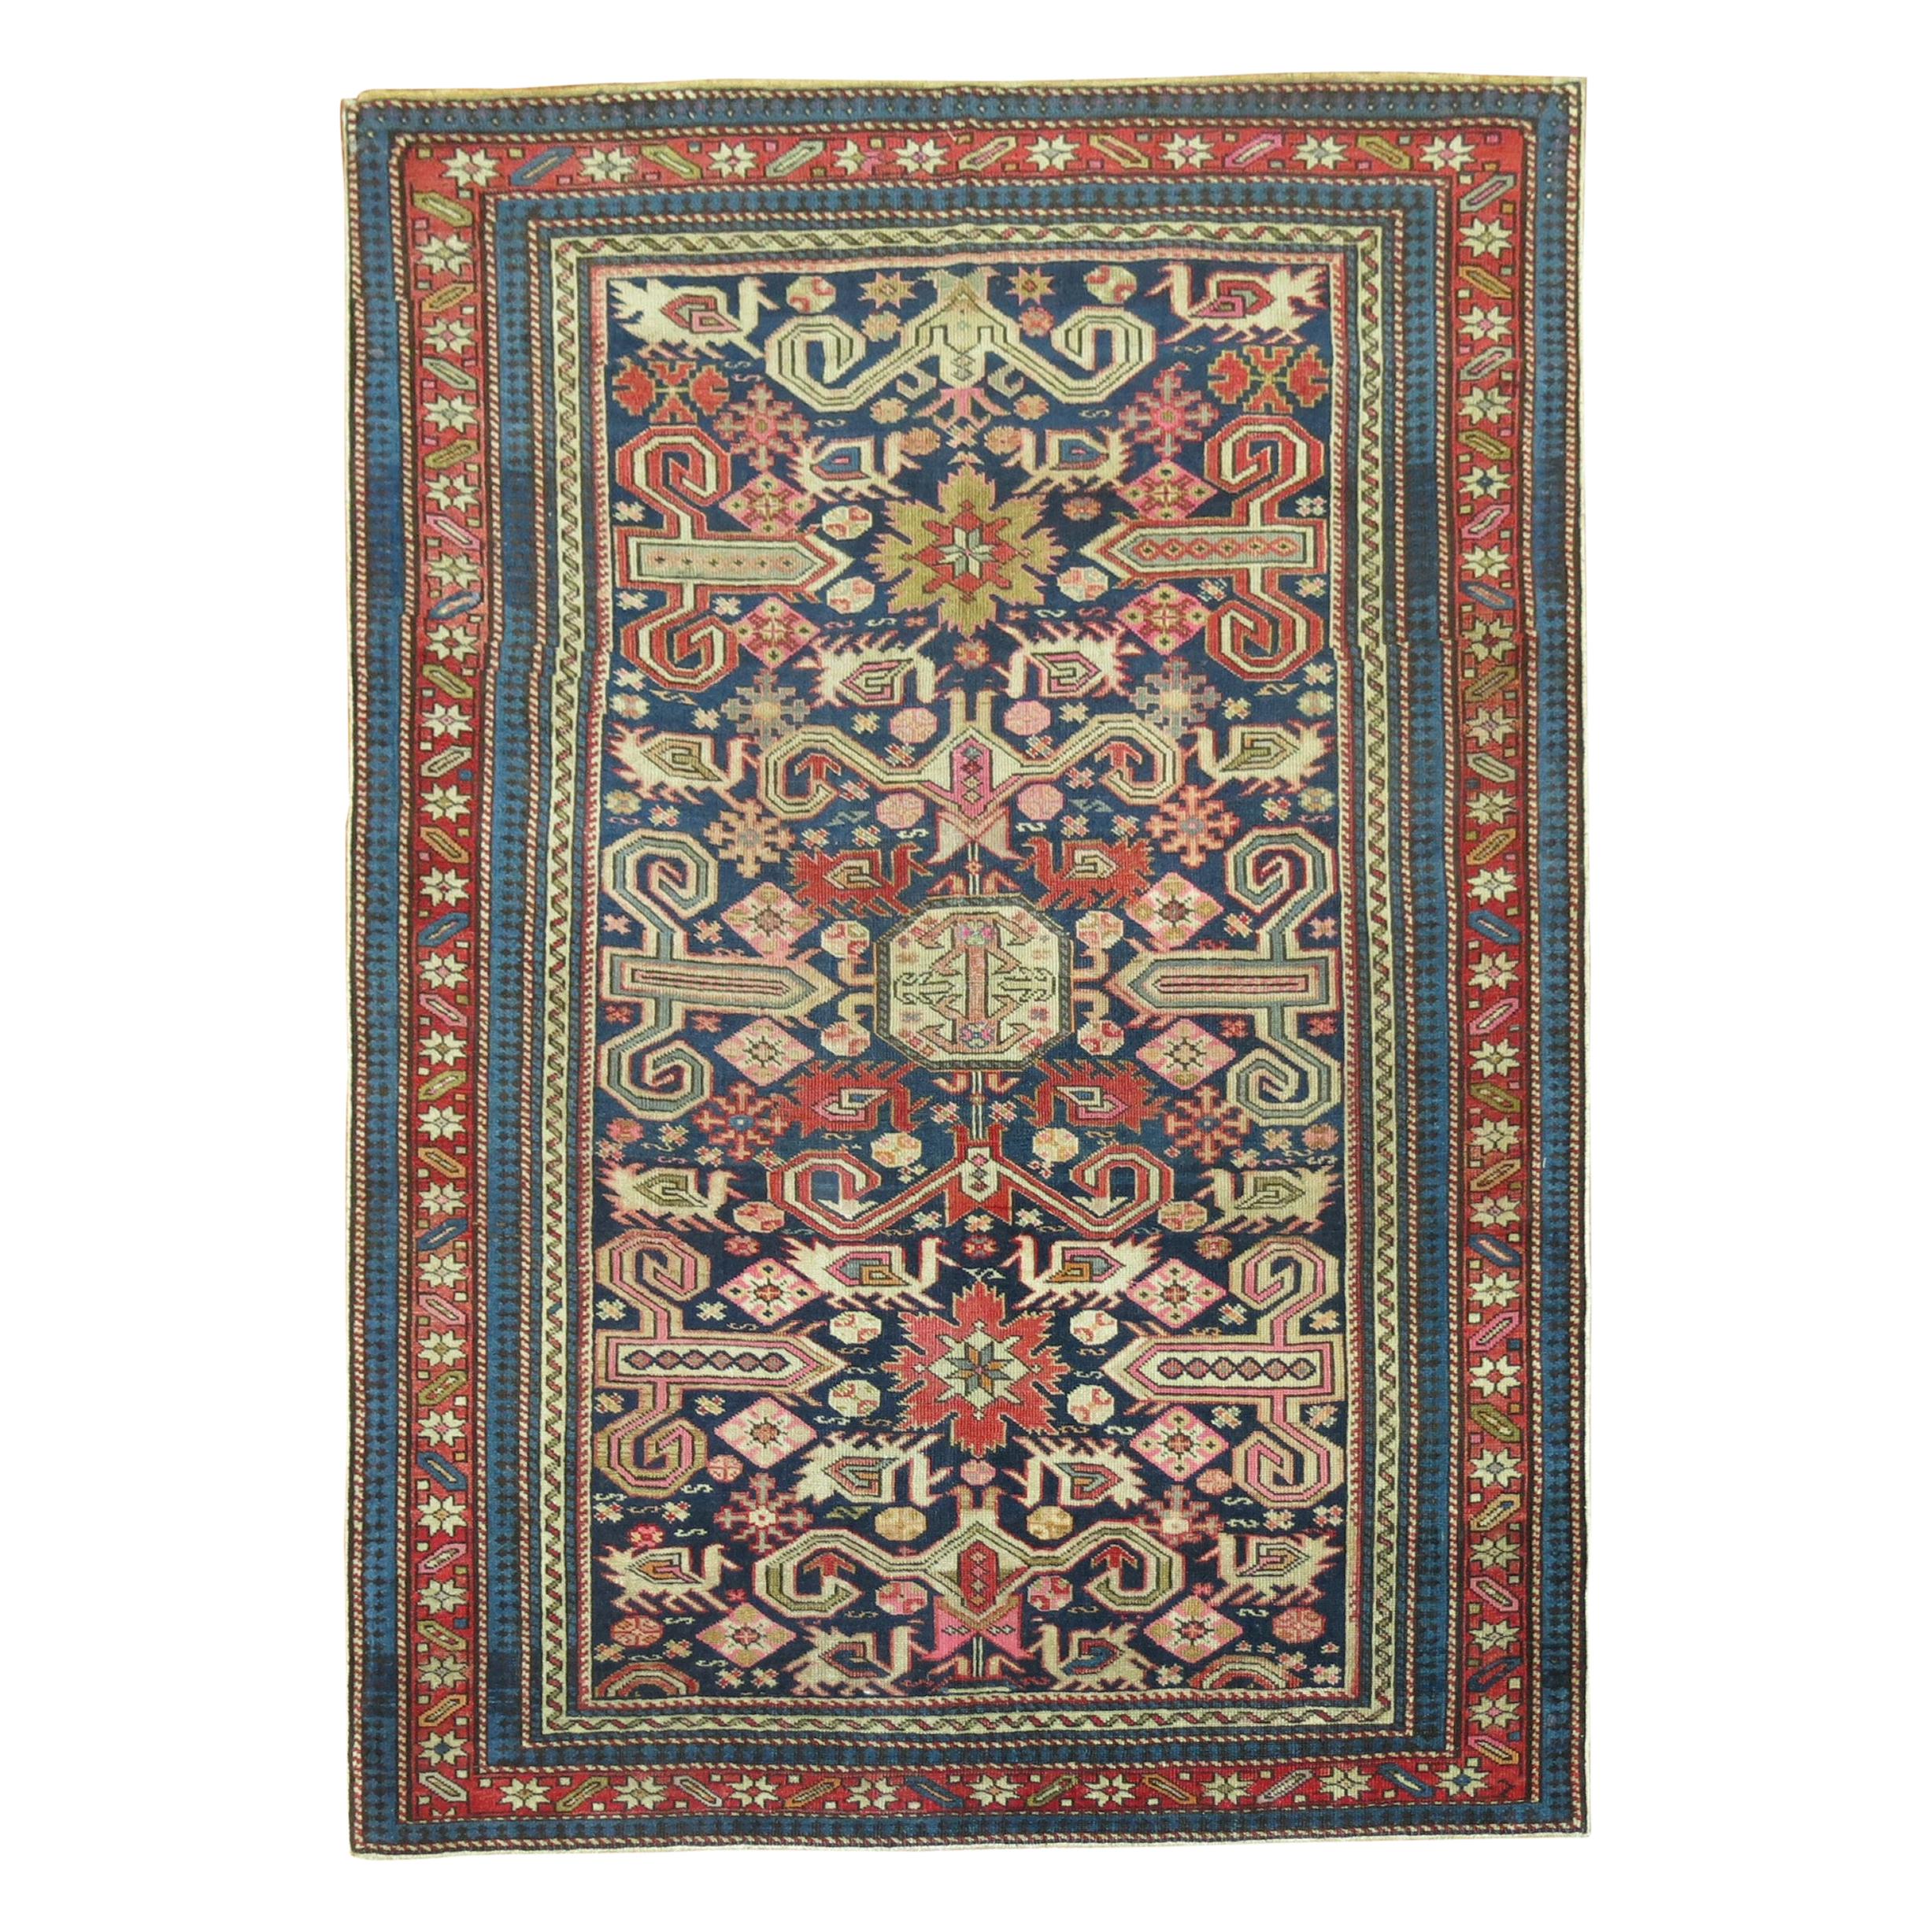 Rare tapis Shirvan caucasien ancien de la fin du 19e siècle:: de couleur marine